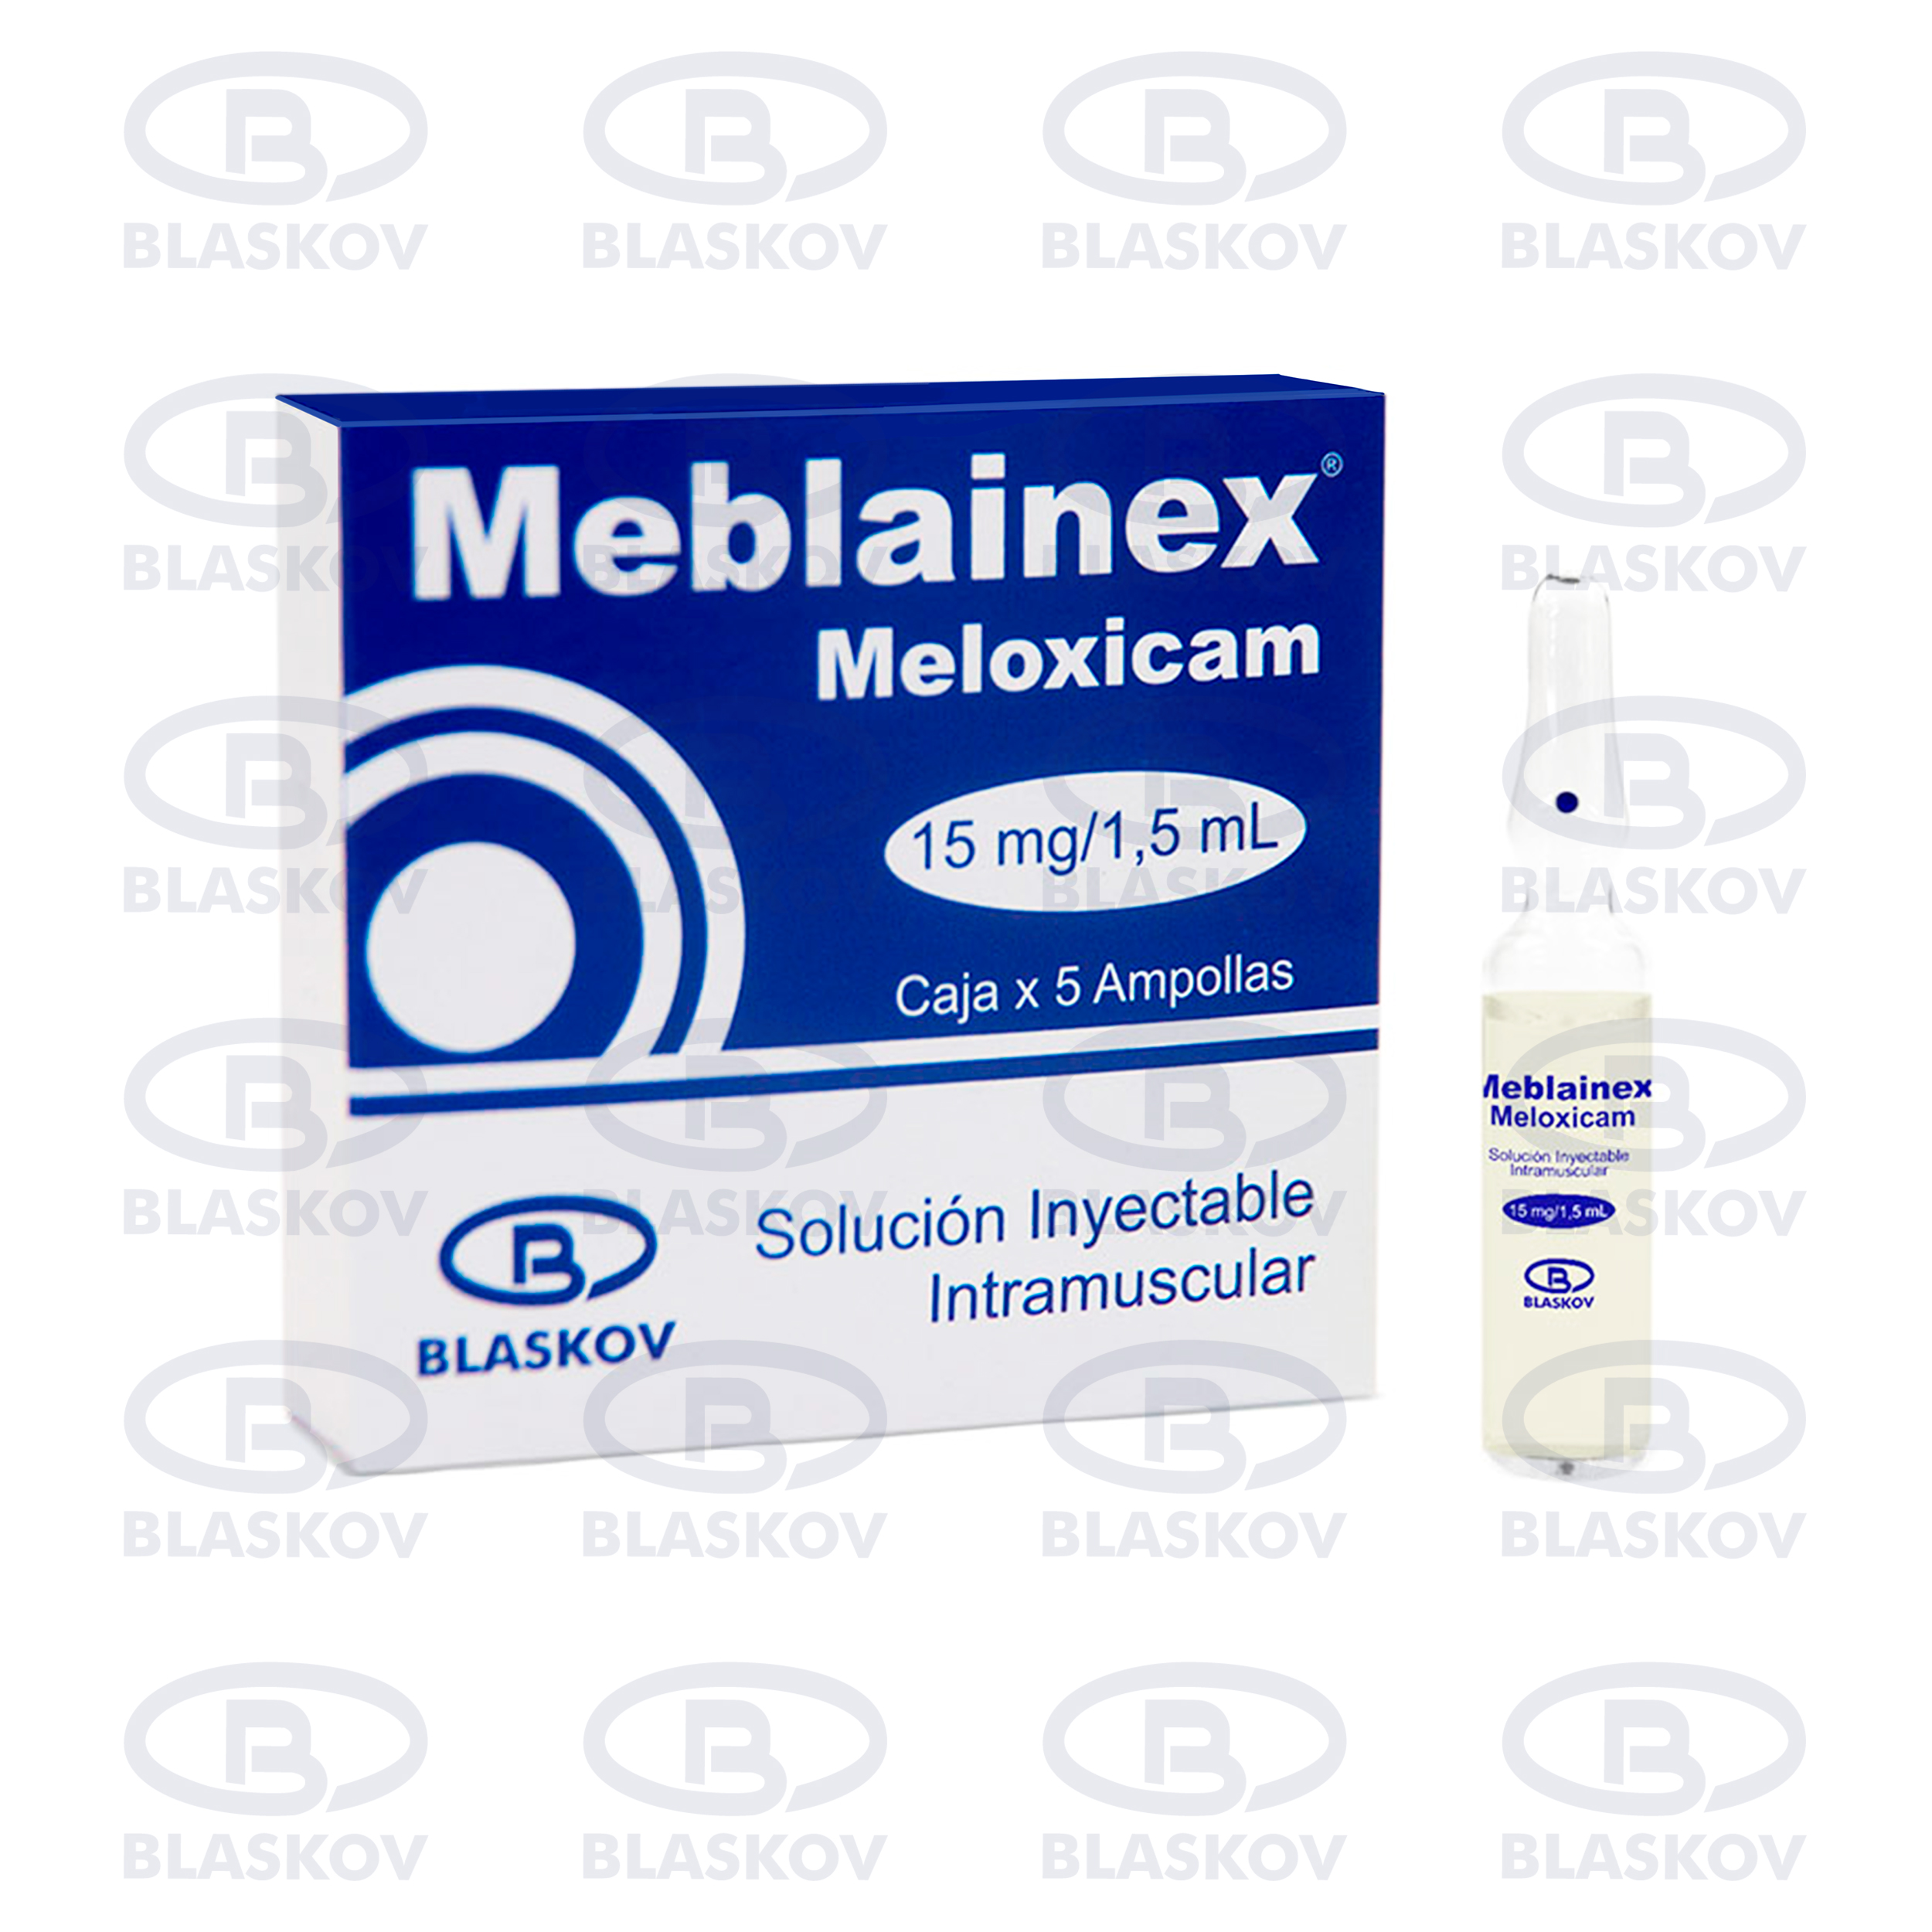 Meblainex